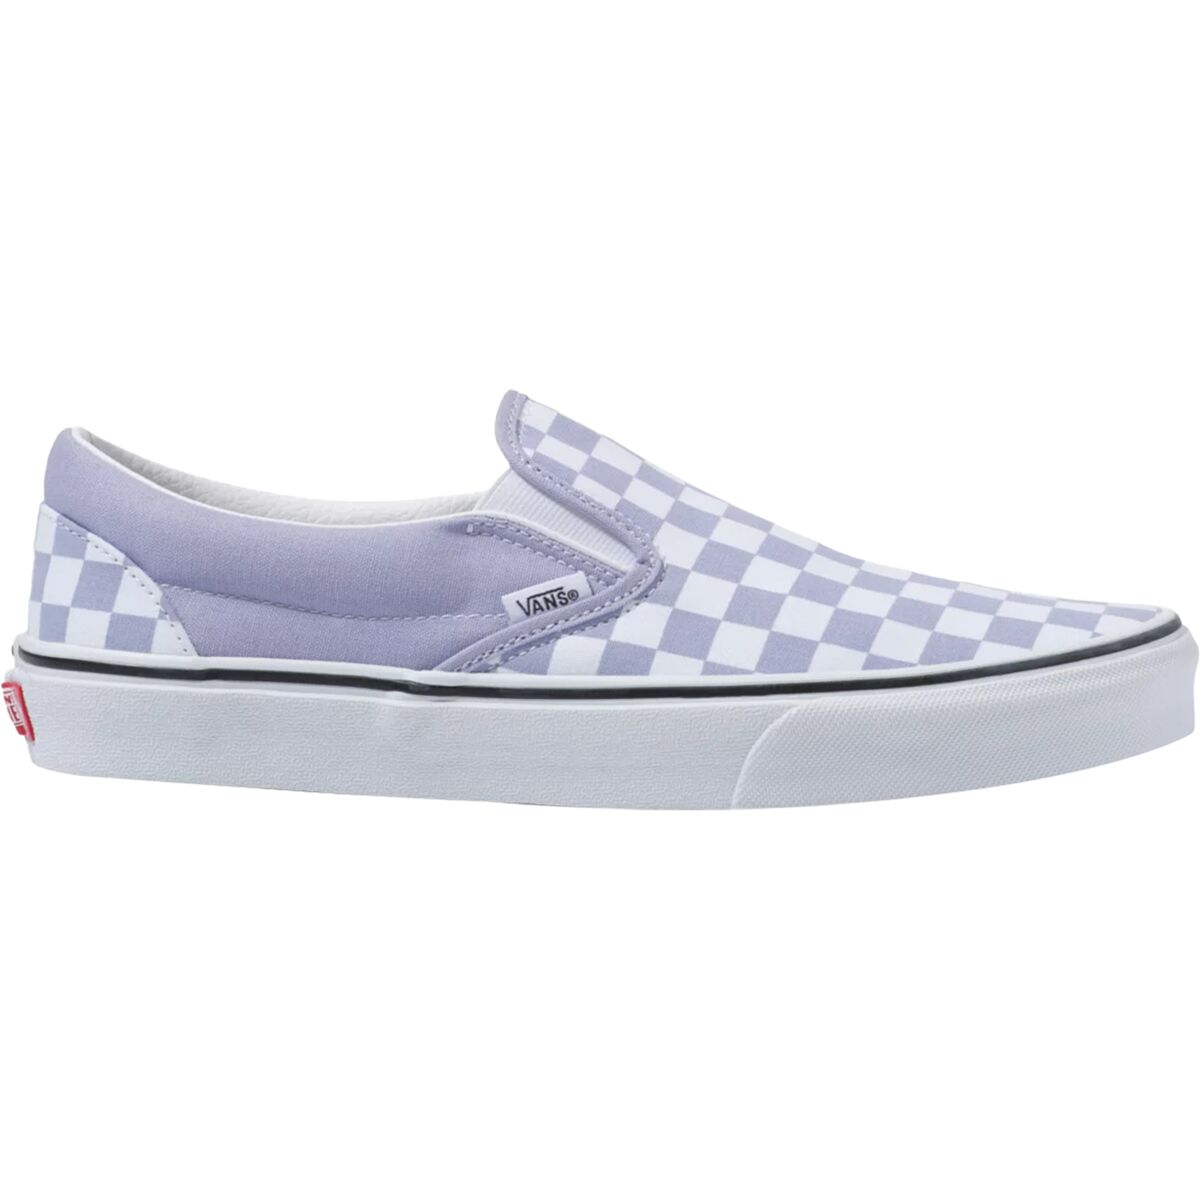 Vans Checkerboard Classic Slip-On Shoe - Women's